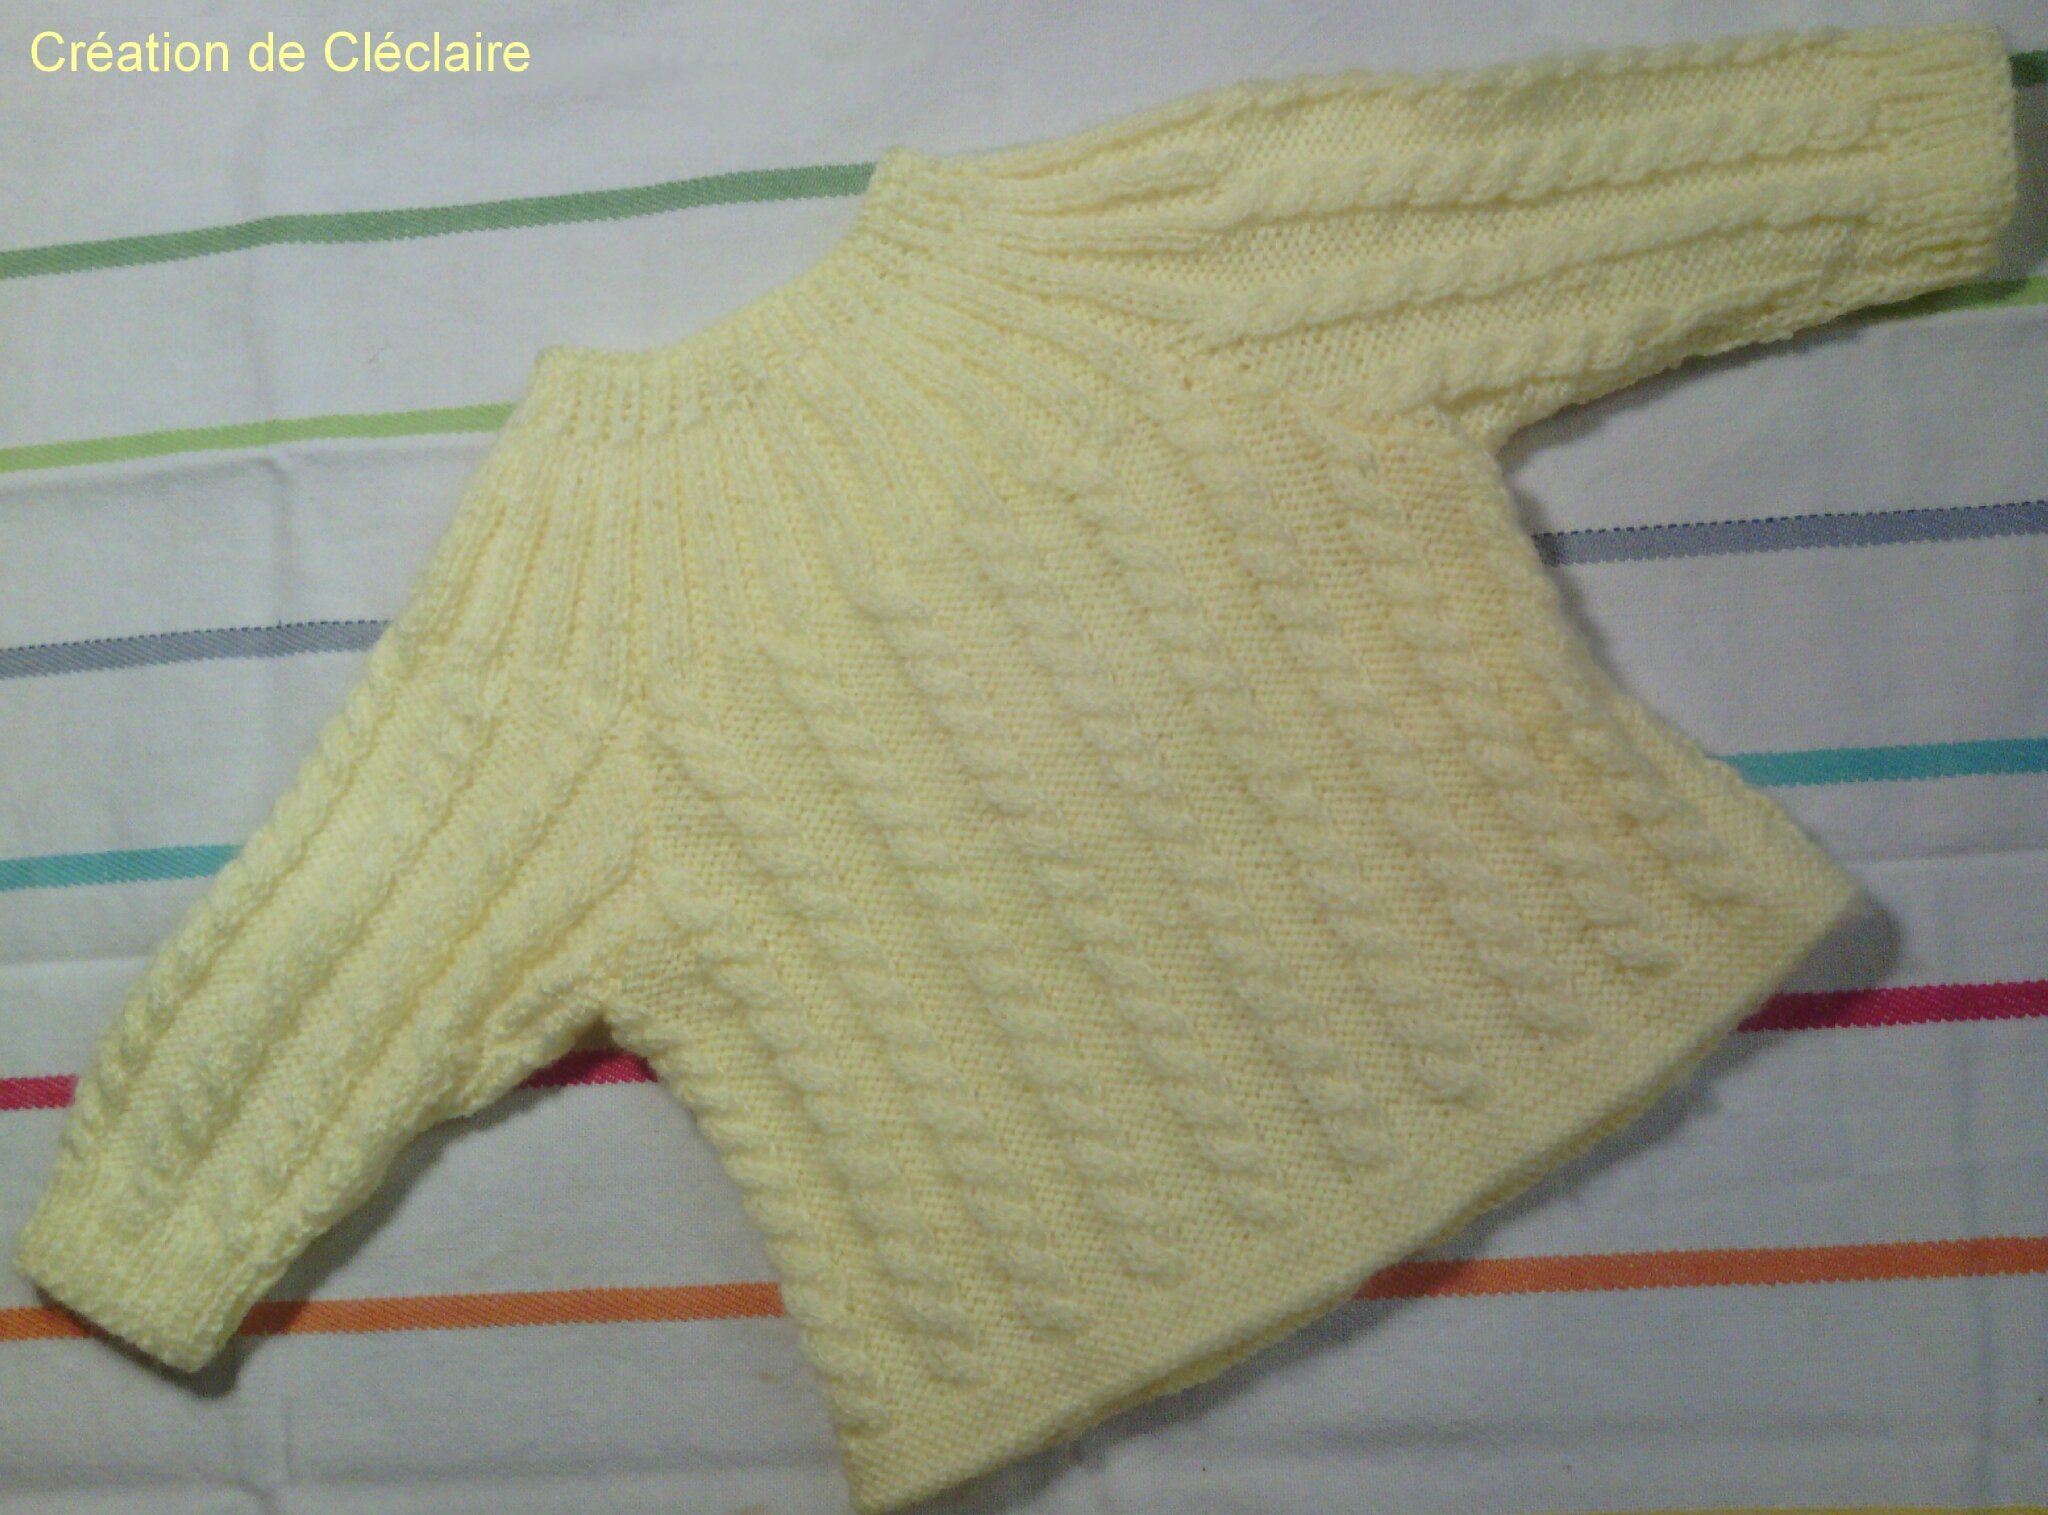 Brassière bébé tricot : un modèle ultra sympa ! 